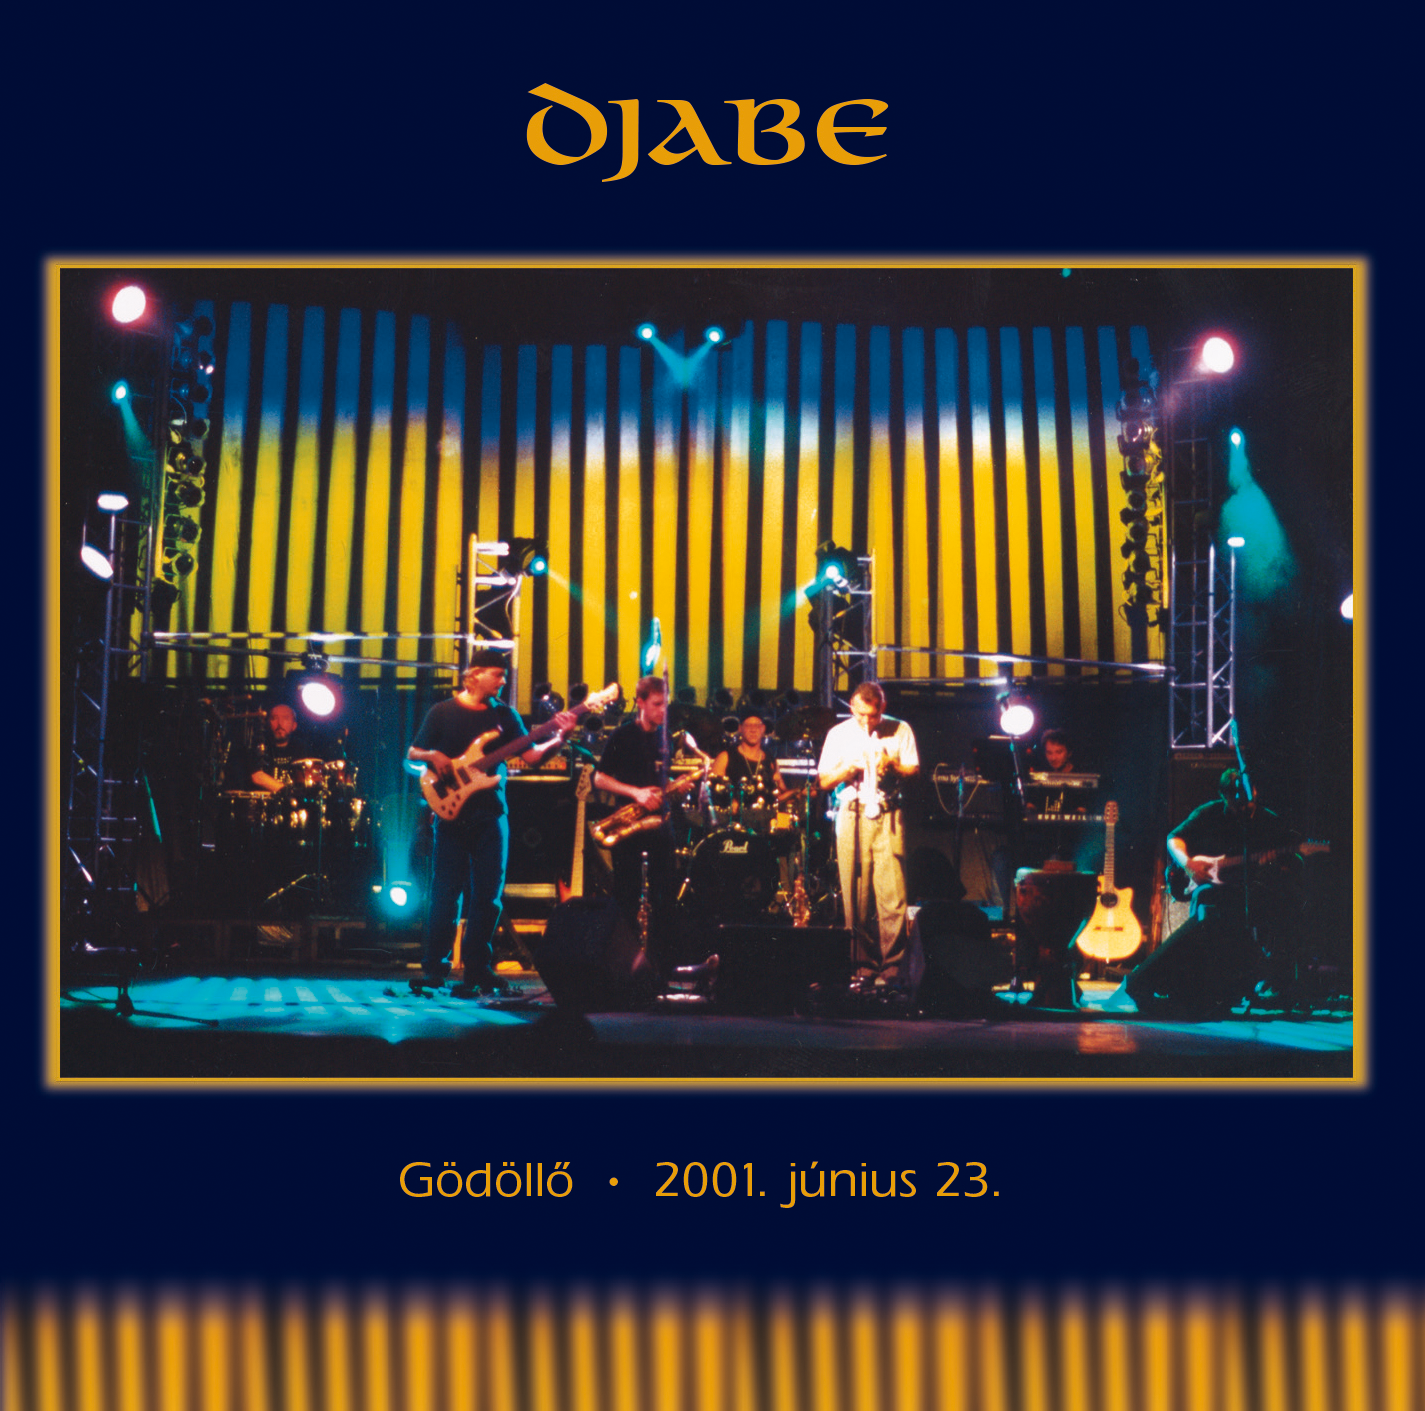 Djabe - Gödöllő 23 June 2001 (2014 Edition) CD